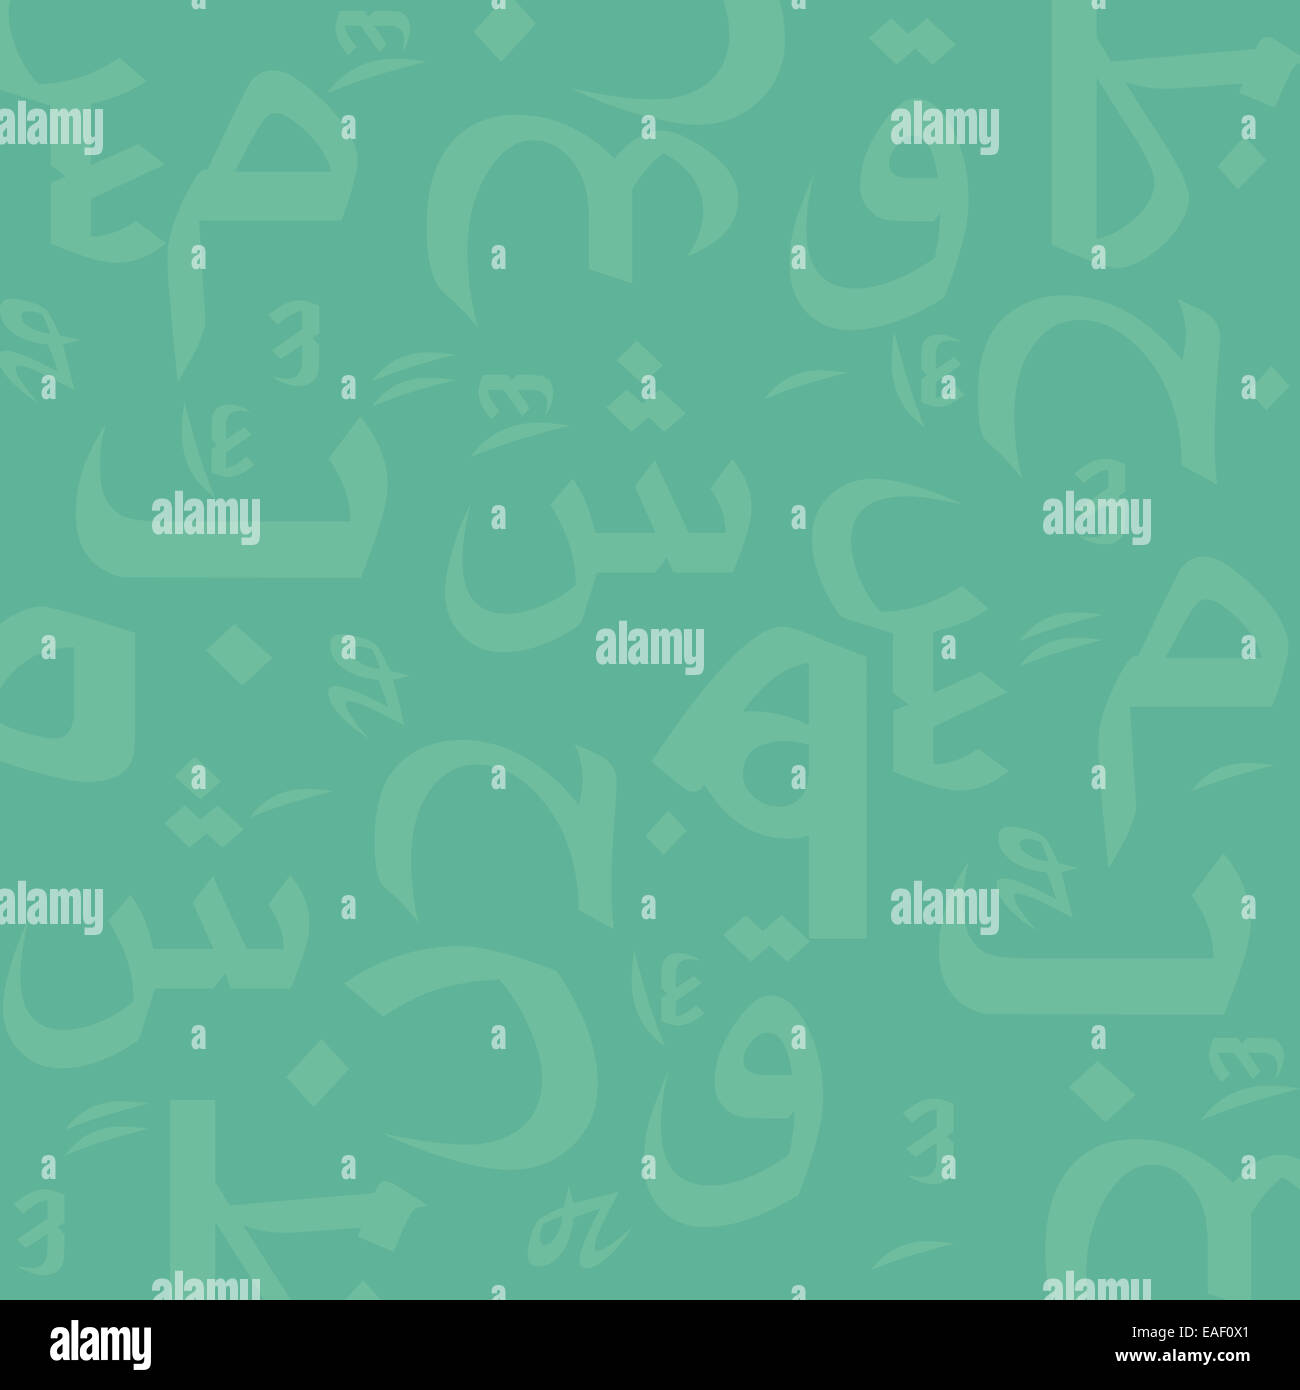 Arabische Buchstaben nahtlose Muster Stockfoto